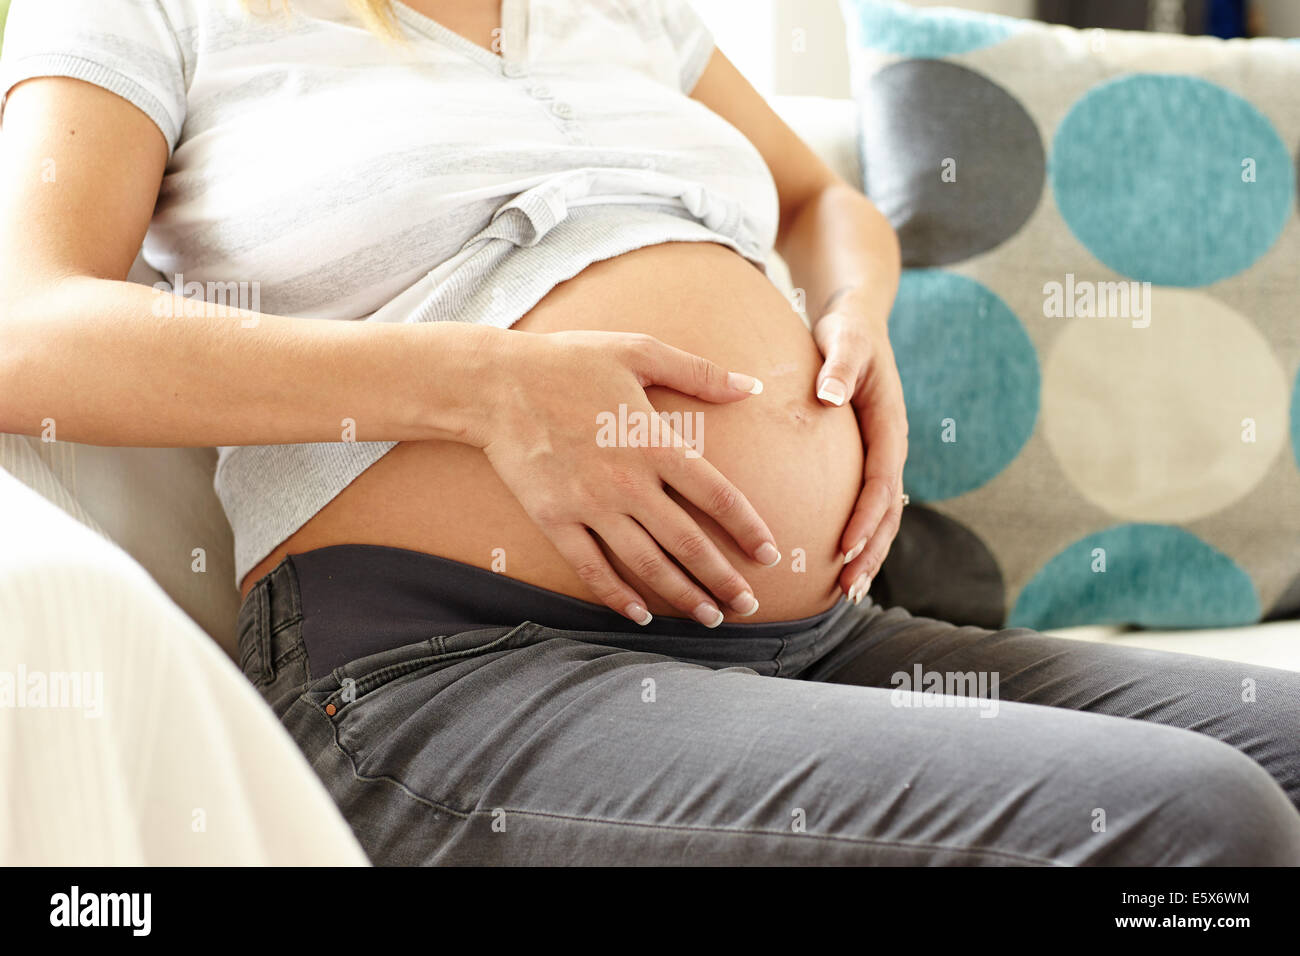 La mujer embarazada se sentó en el sofá relajante Foto de stock